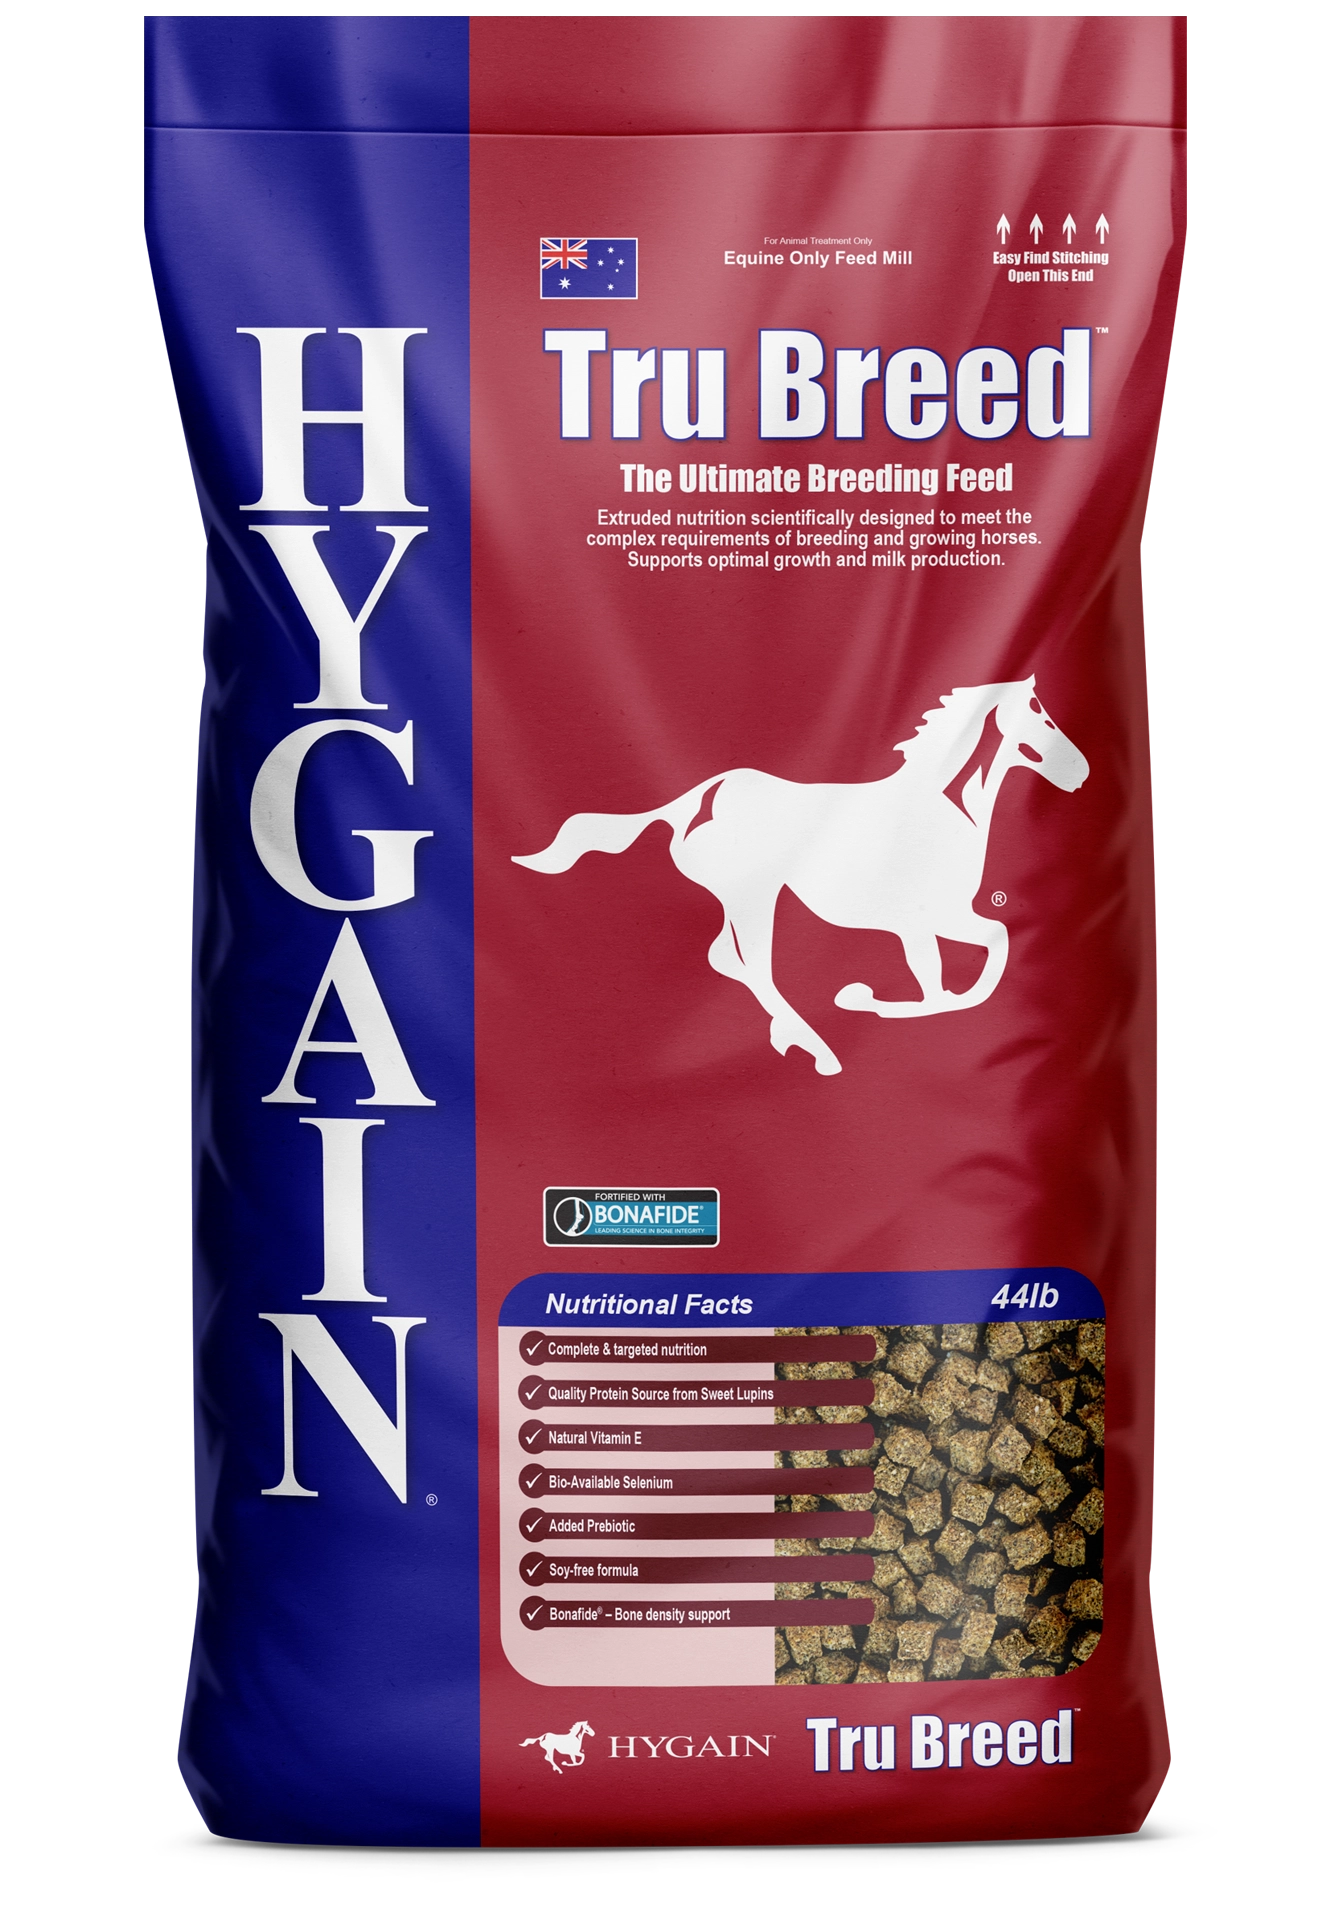 Hygain Tru Breed bag